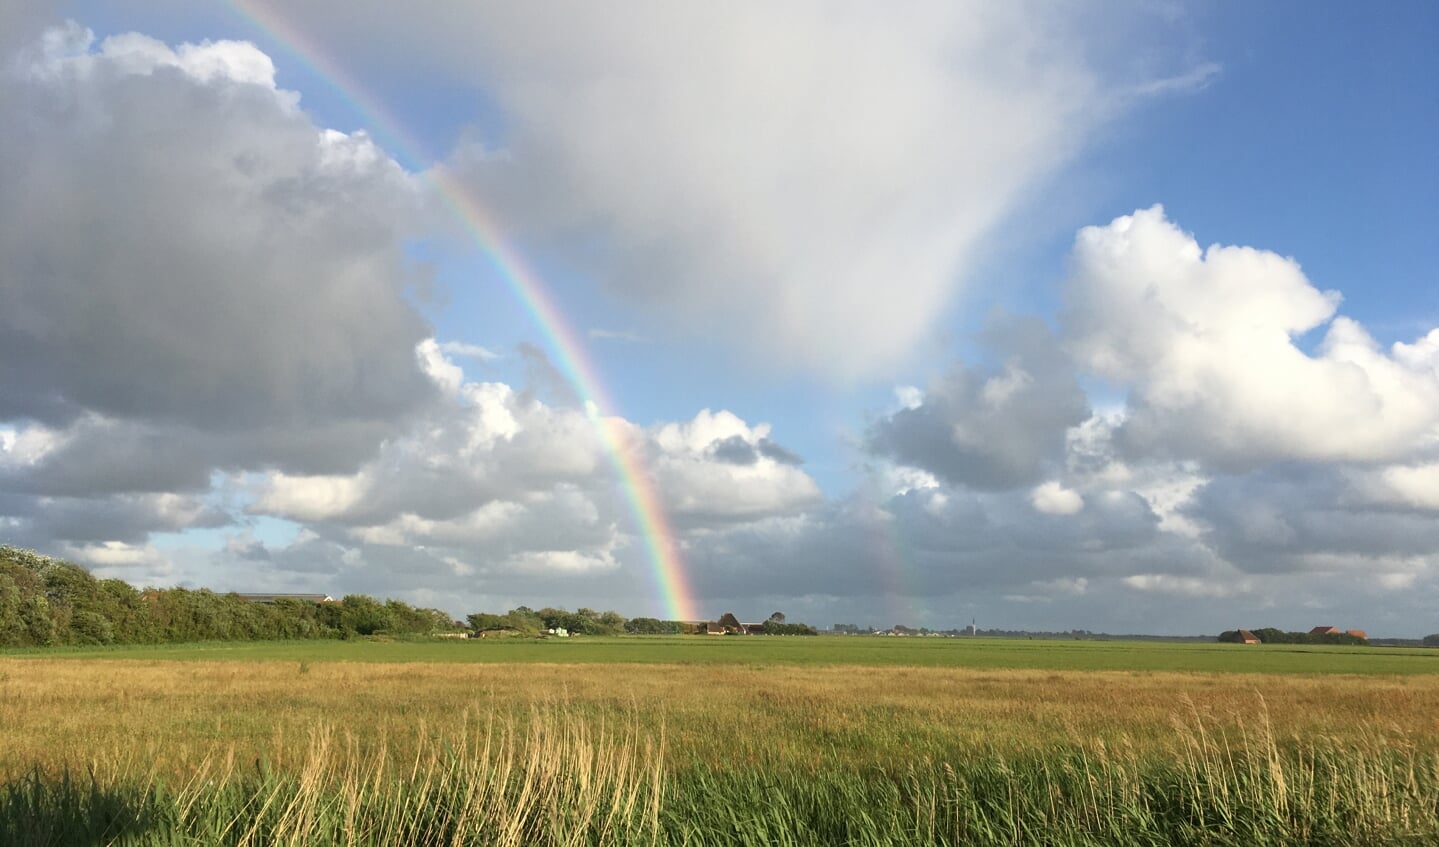 Twee regenbogen, gemaakt bij Den Hoorn op Texel in juni van dit jaar.

